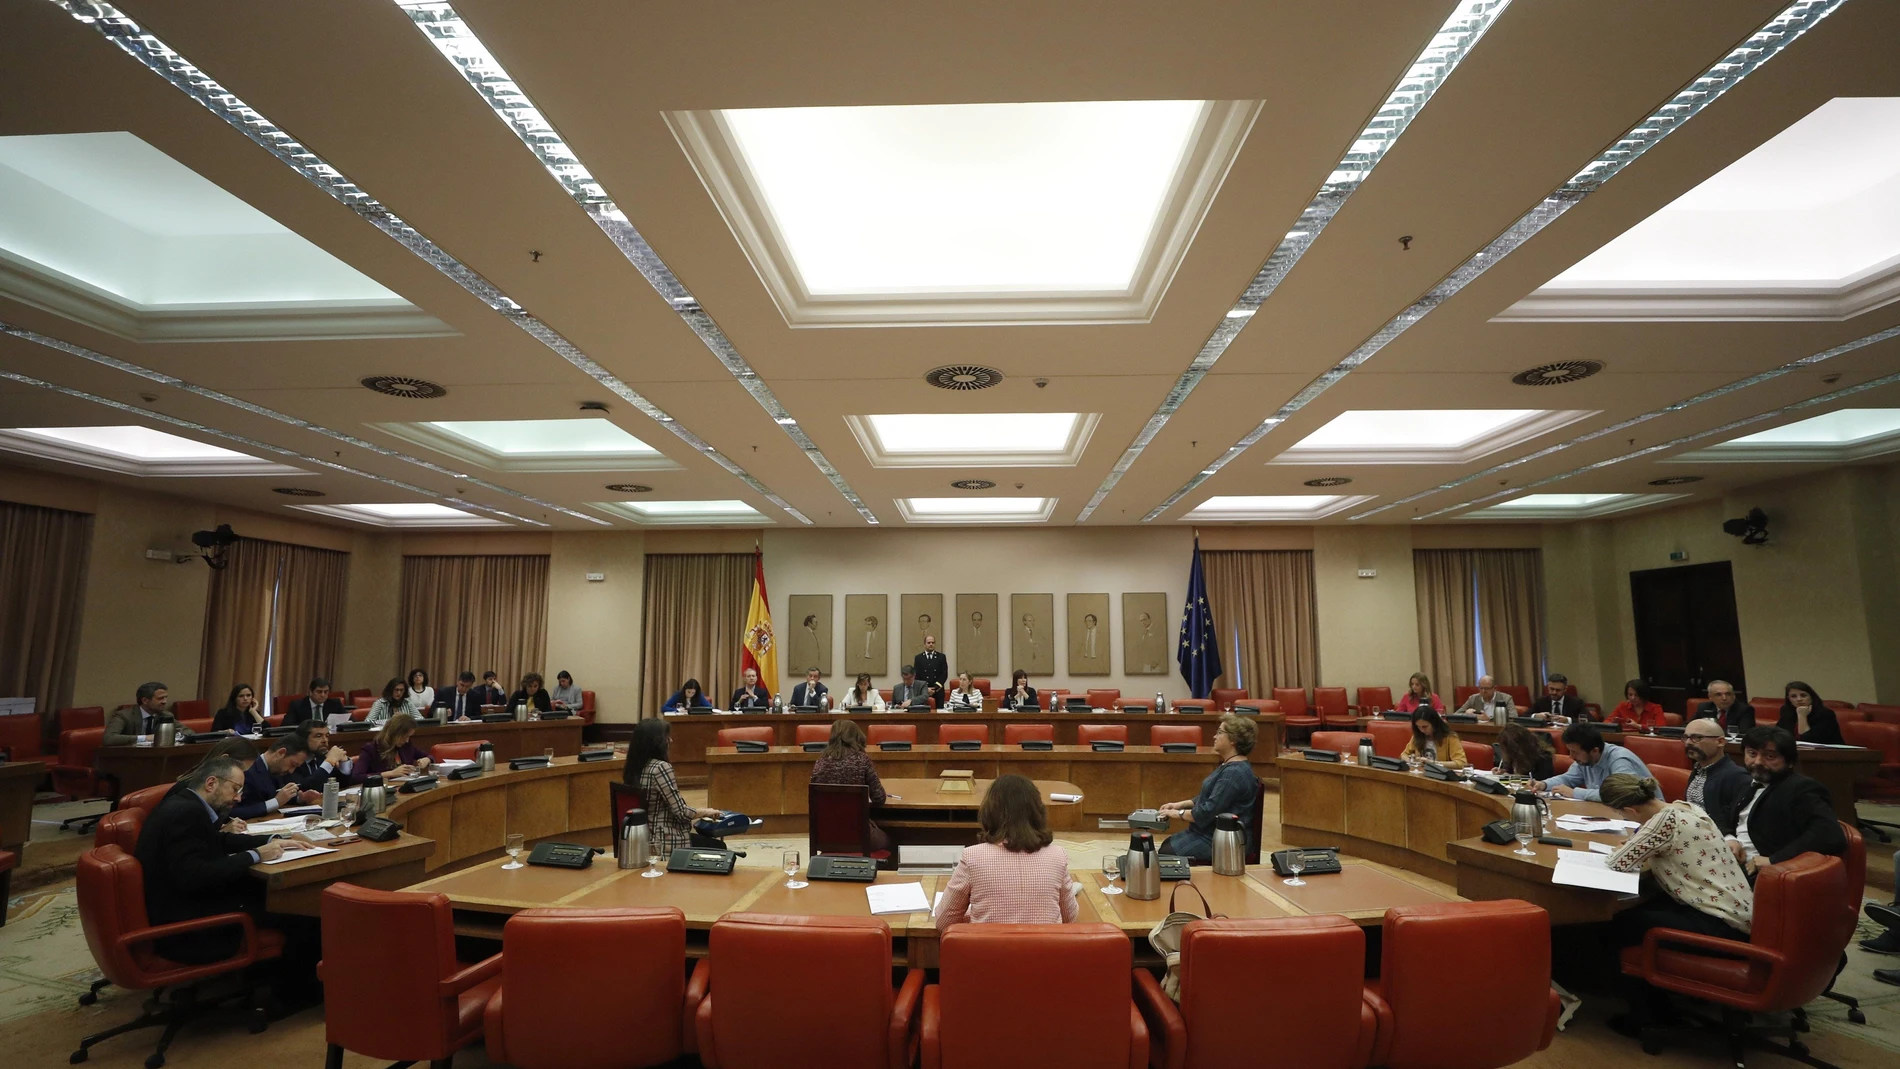 Vista general de la reunión de la Diputación Permanente en el Congreso de los Diputados.